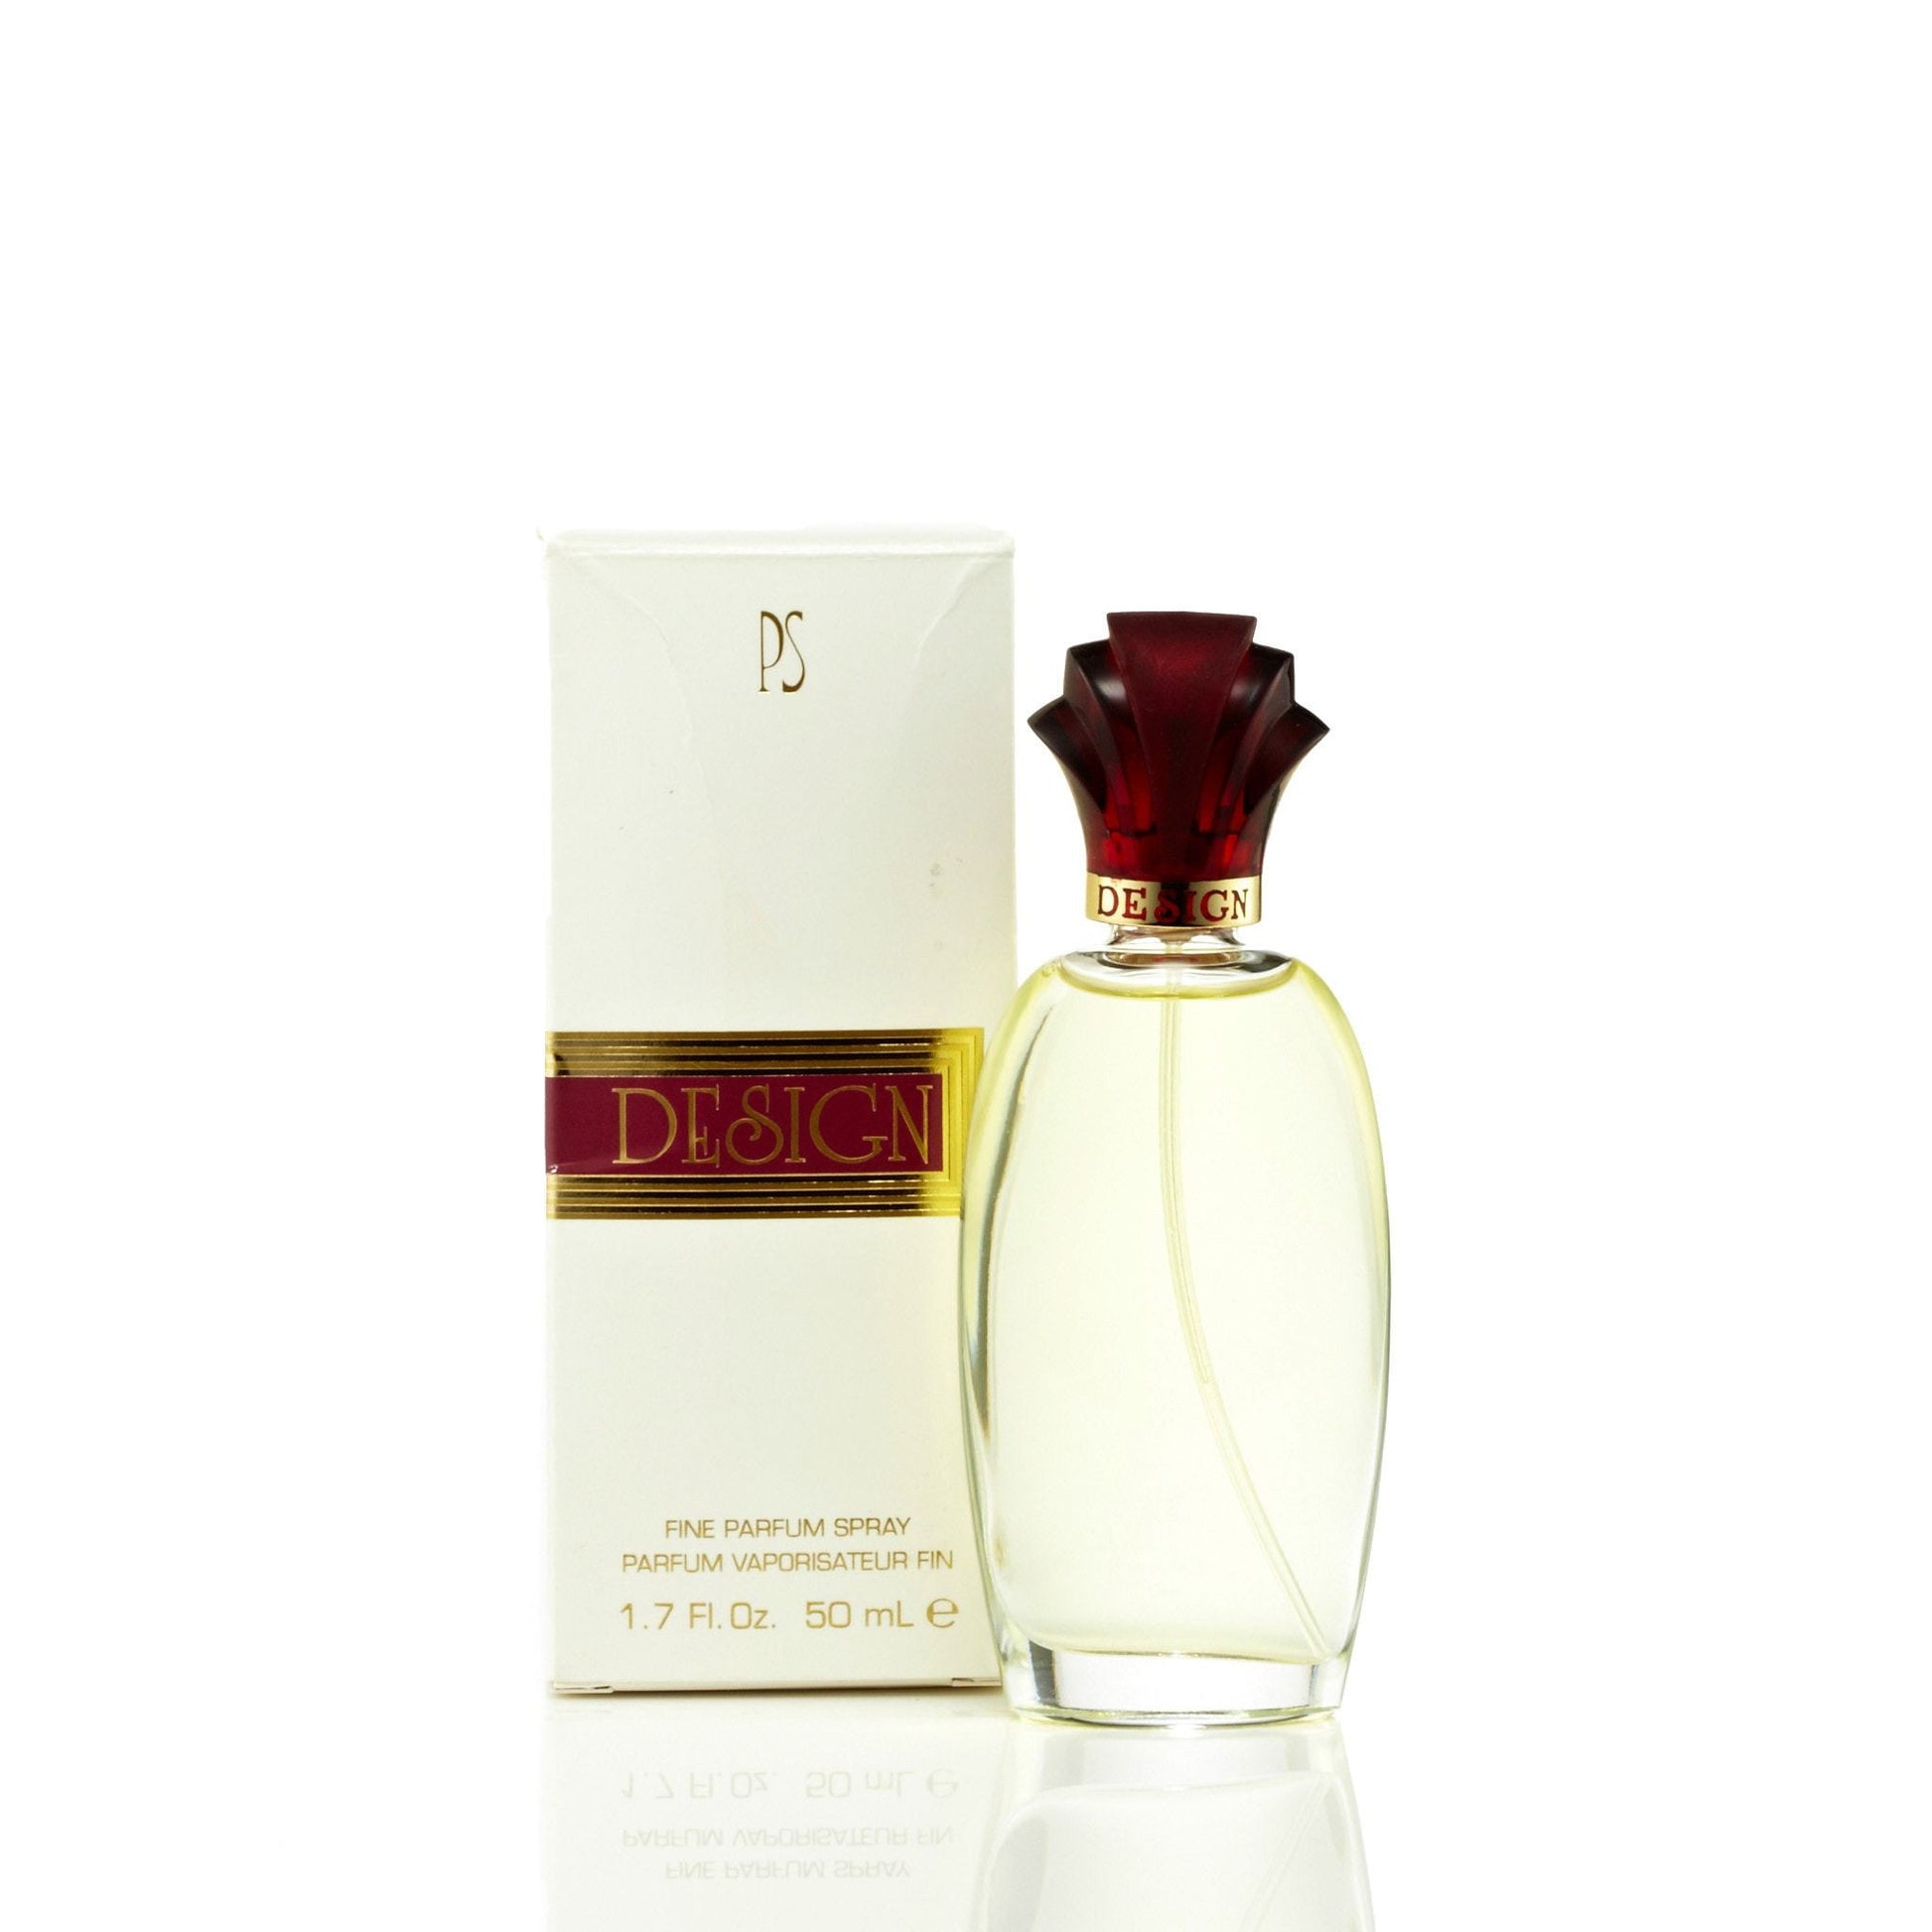 Design Eau de Parfum Spray for Women by Paul Sebastian, Product image 4